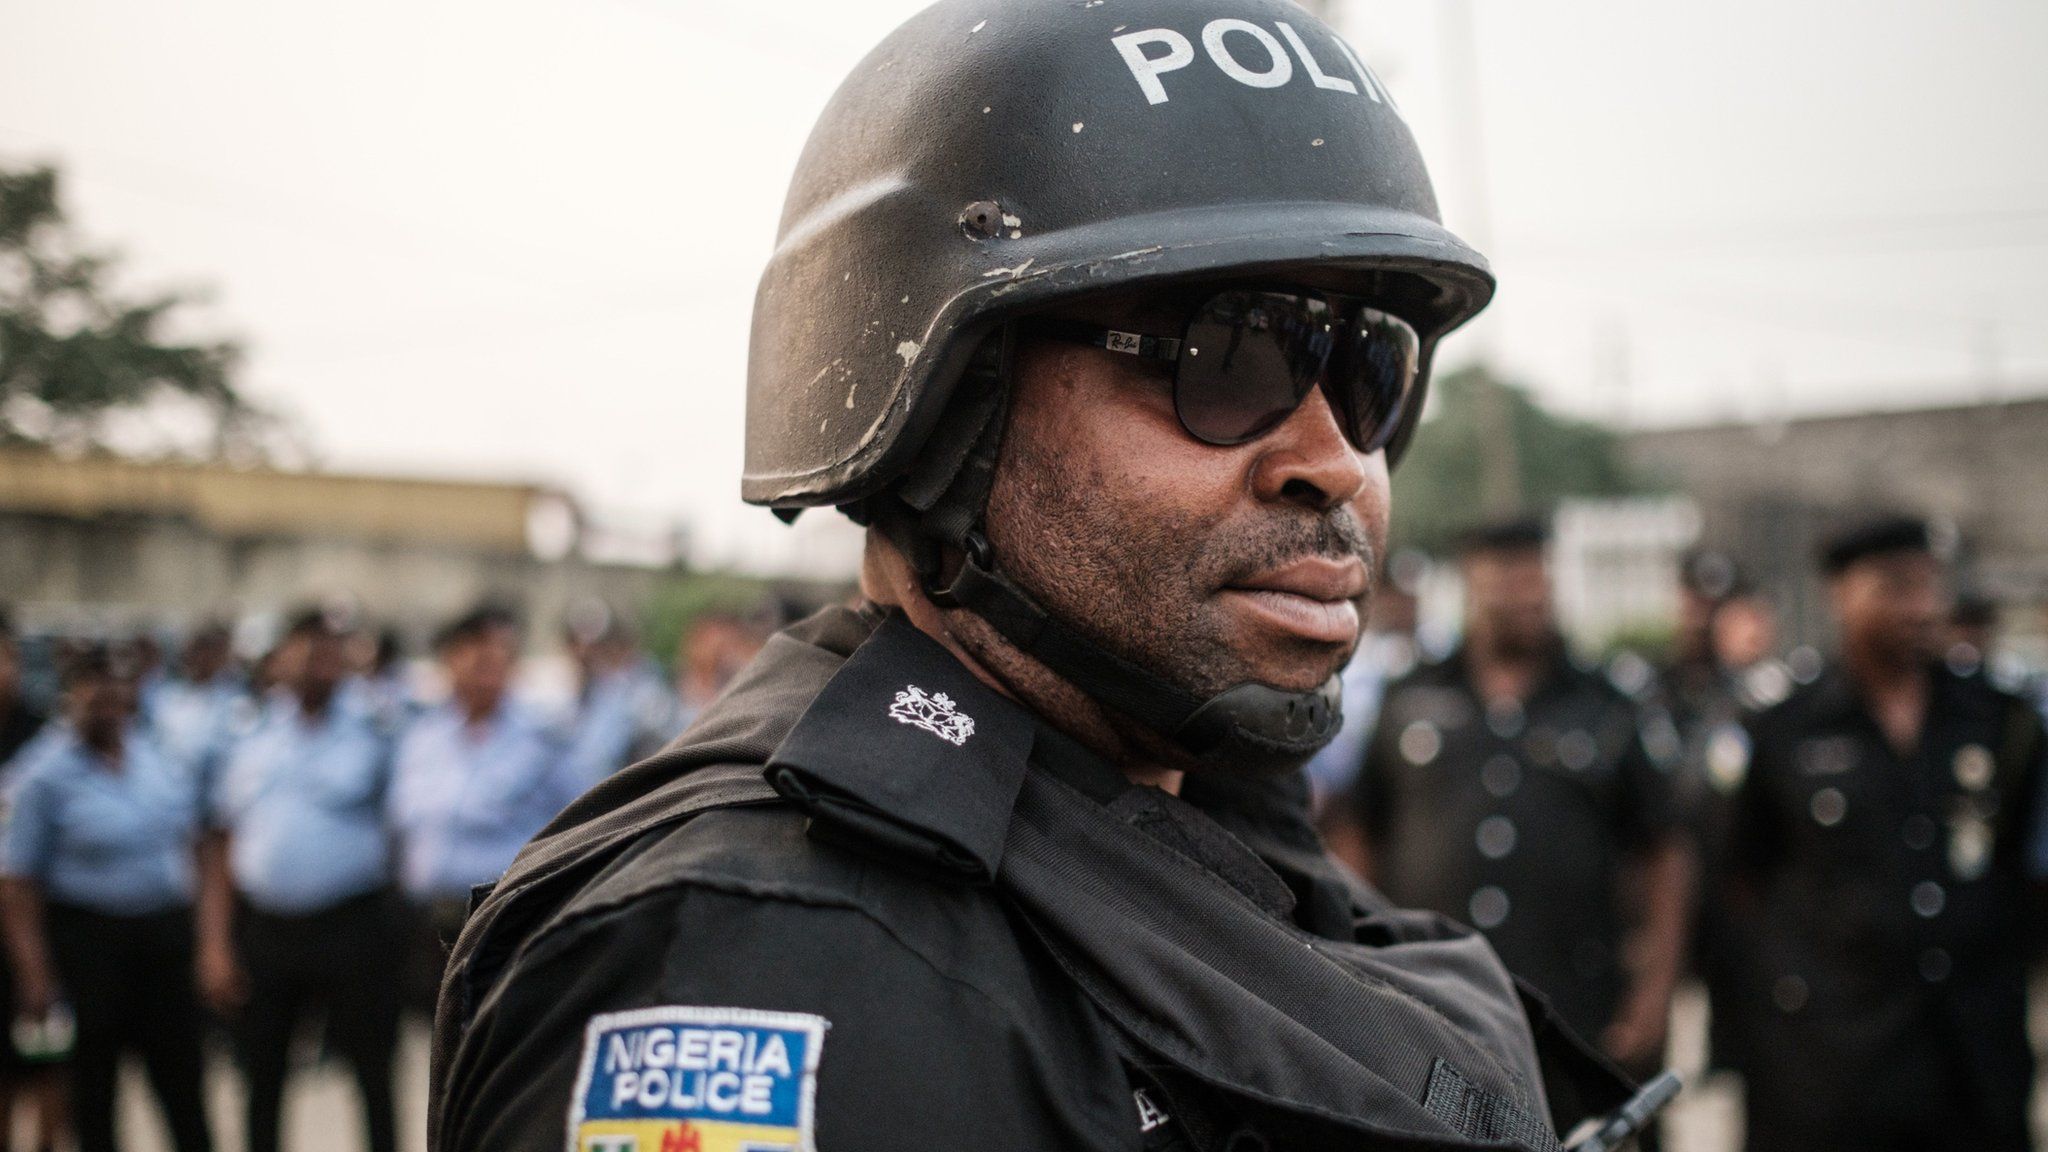 Nigerian police officer